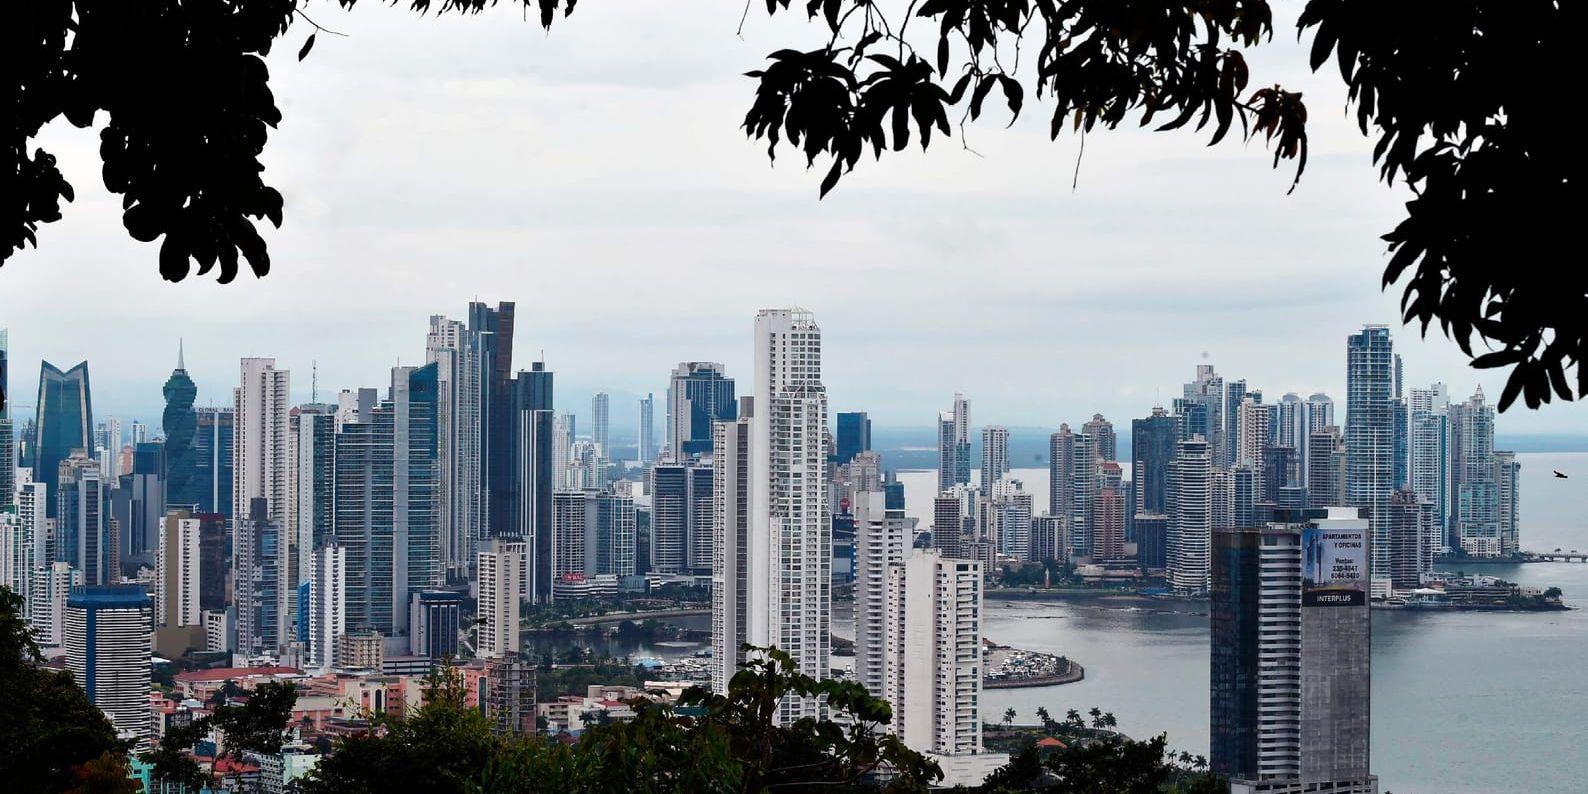 Panamaskandalen visar tydligt att politiken behöver ställa högre krav på bankerna att motverka olaglig skatteplanering och penningtvätt, skriver Liberalerna.